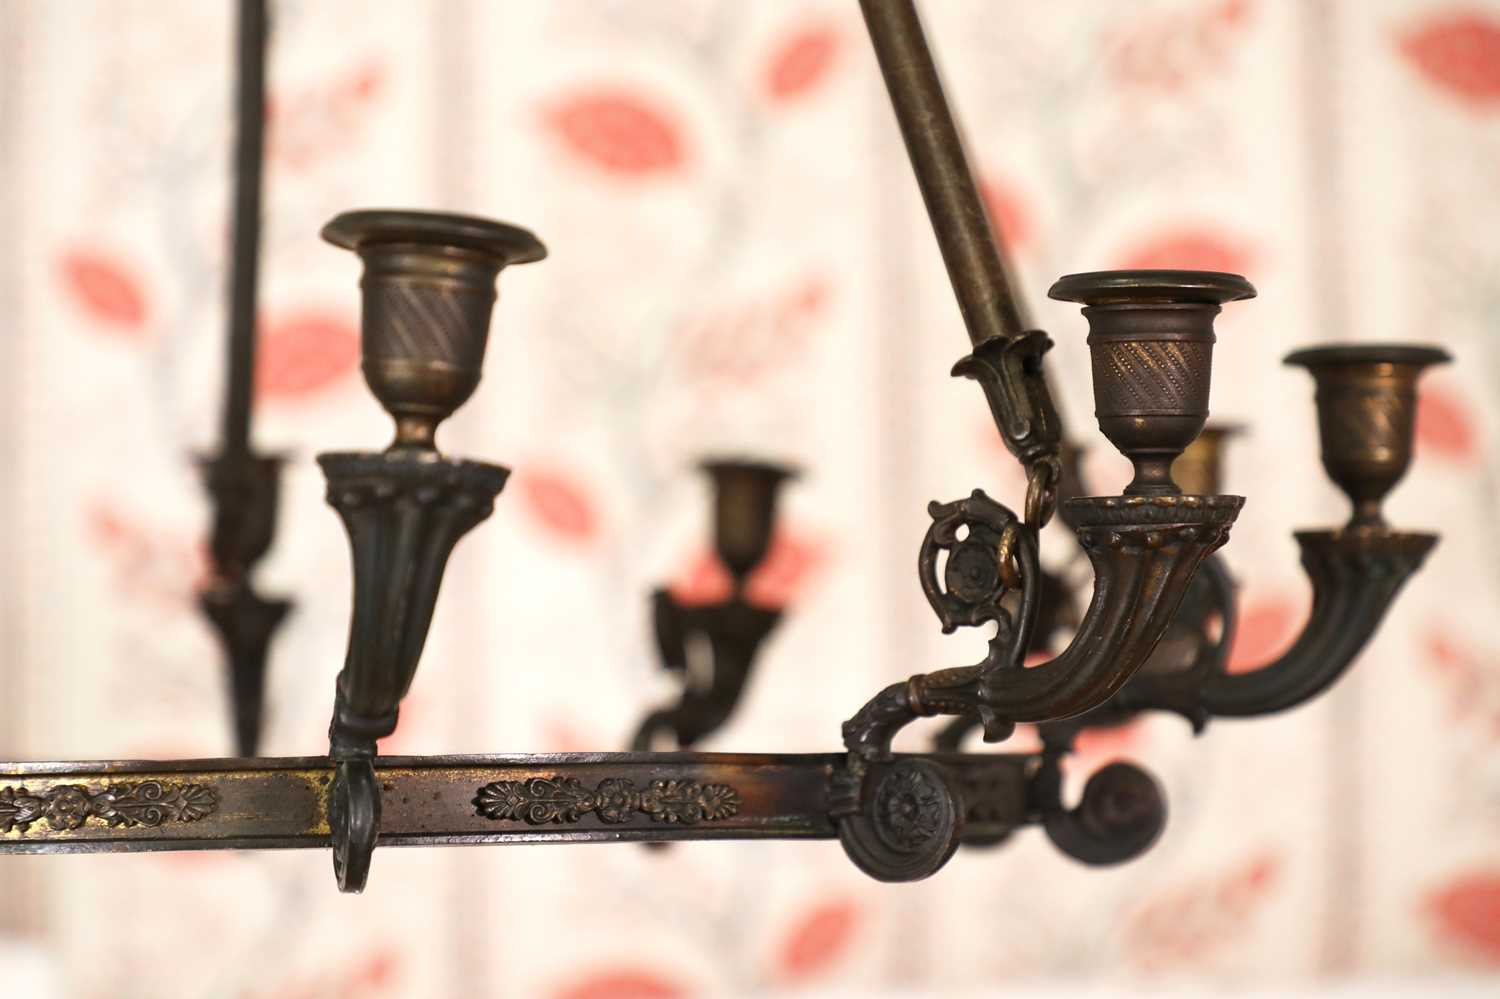 An Empire bronze ten-branch chandelier, - Image 2 of 2